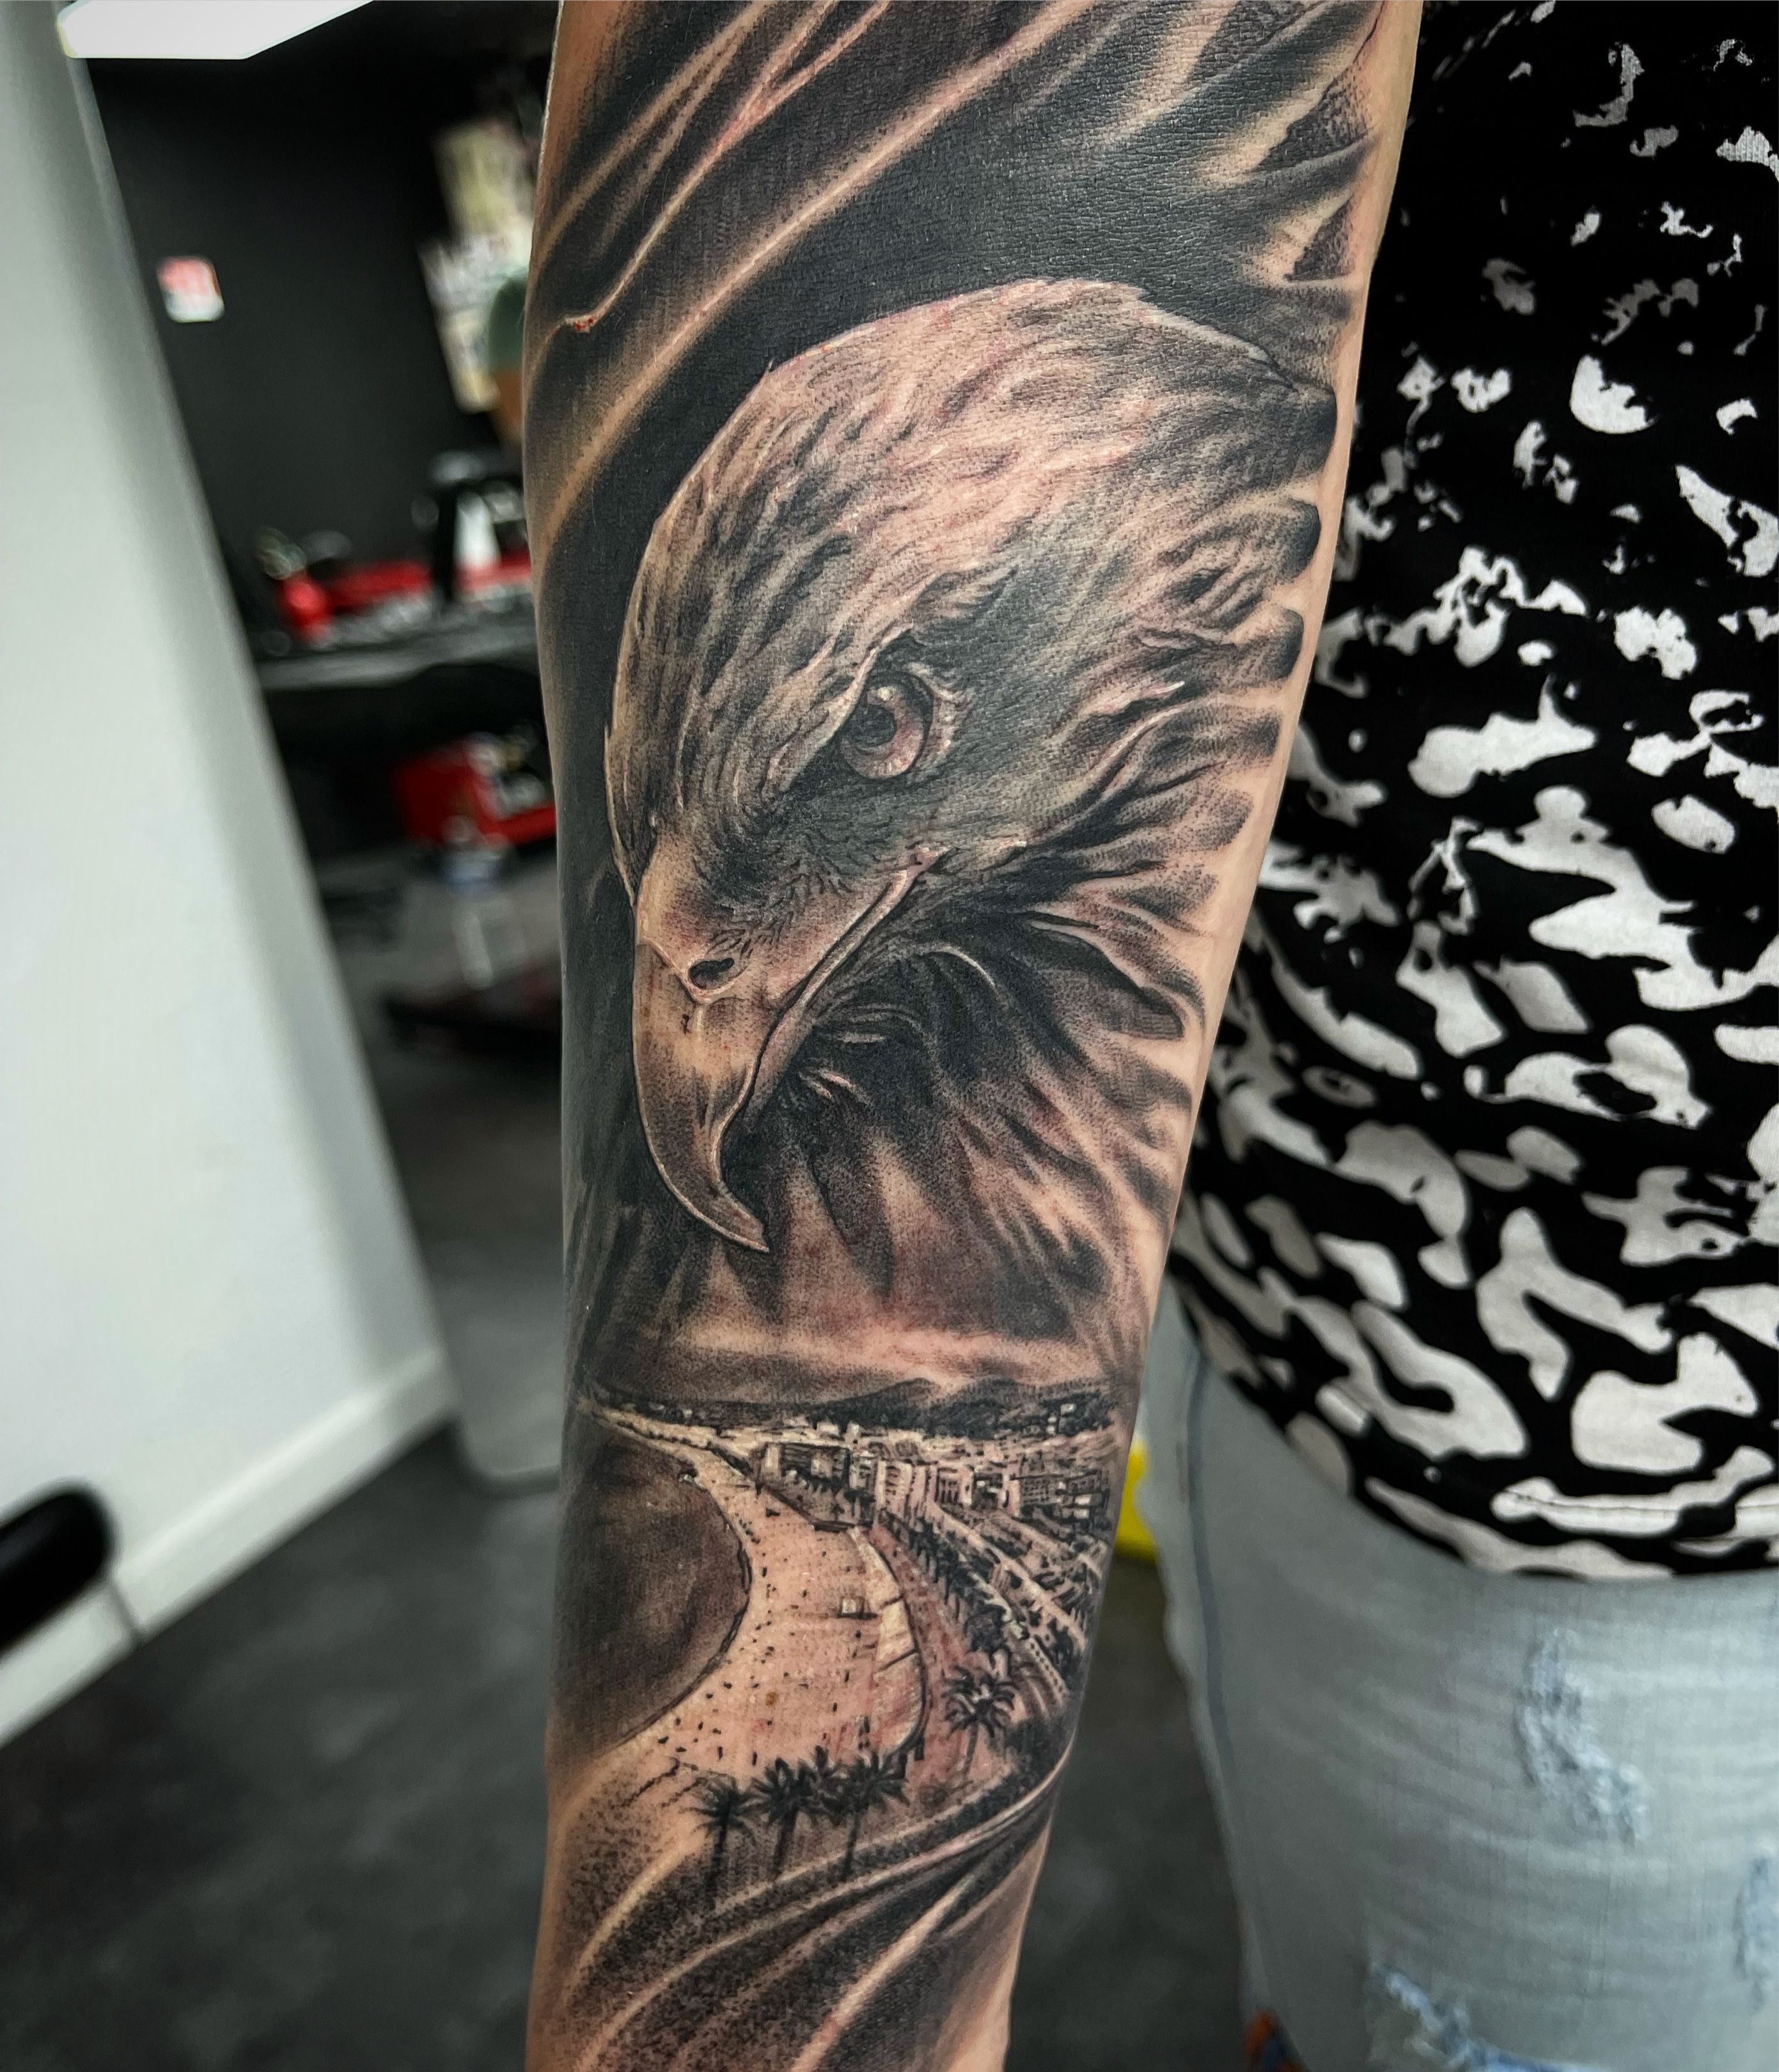 INKfernal Tattoo - #eagletattoo #eagle #tattoo #tattoos #tat #ink #inked  #me #tattooed #tattoist #art #blackandgreytattoo #instaart #instagood  #sleevetattoo #handtattoo #chesttatto #tatted #instatattoo #bodyart #tatts  #tats #amazingink #tattedup ...